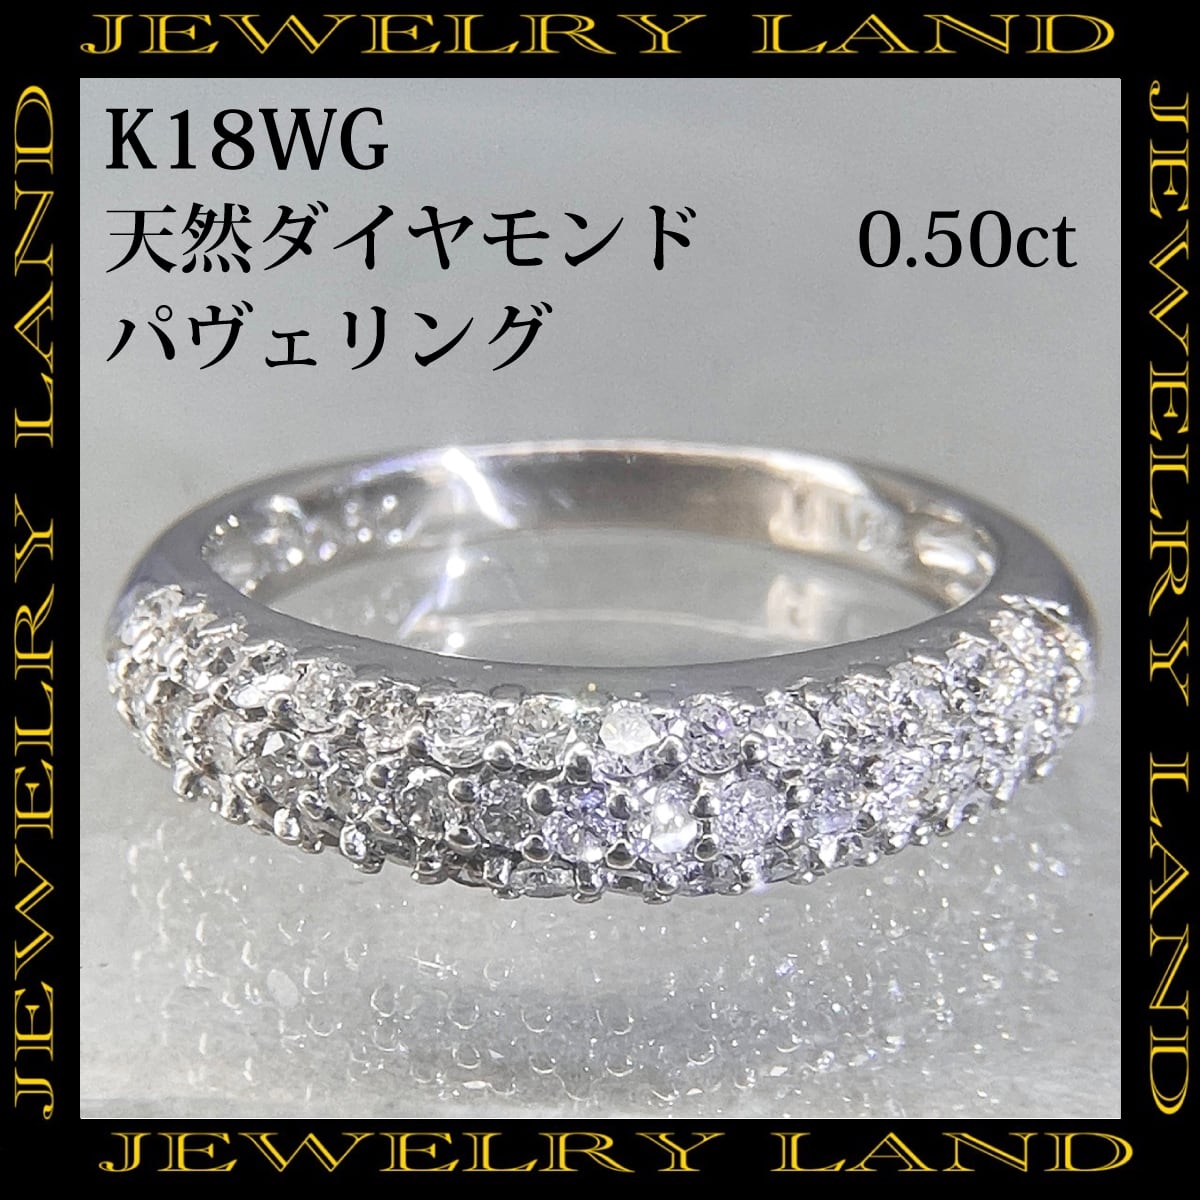 K18wg 天然ダイヤモンド 計0.50ct パヴェリング